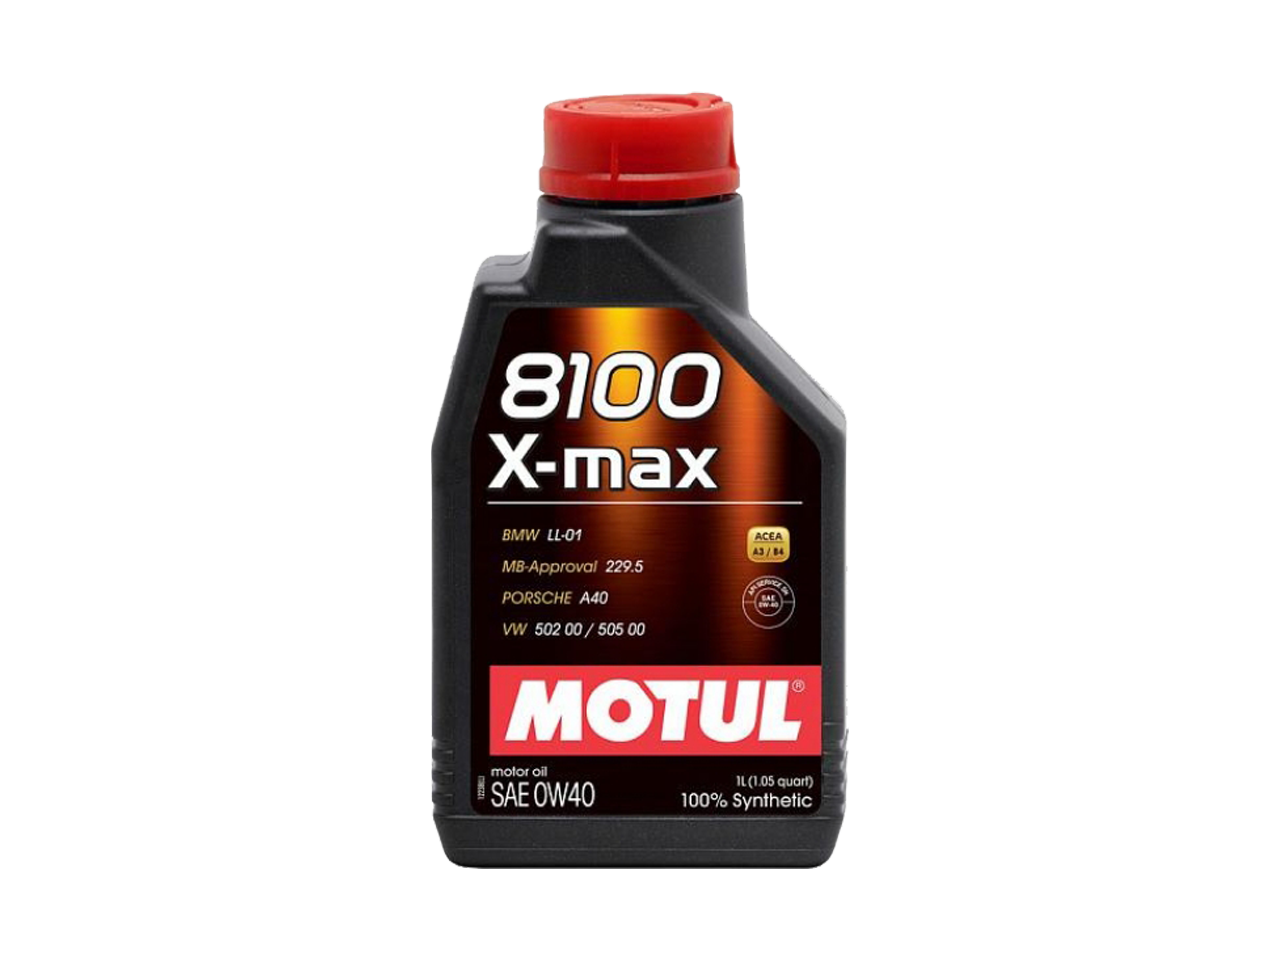 Купить недорого Моторное масло Motul 8100 X-max в Москве